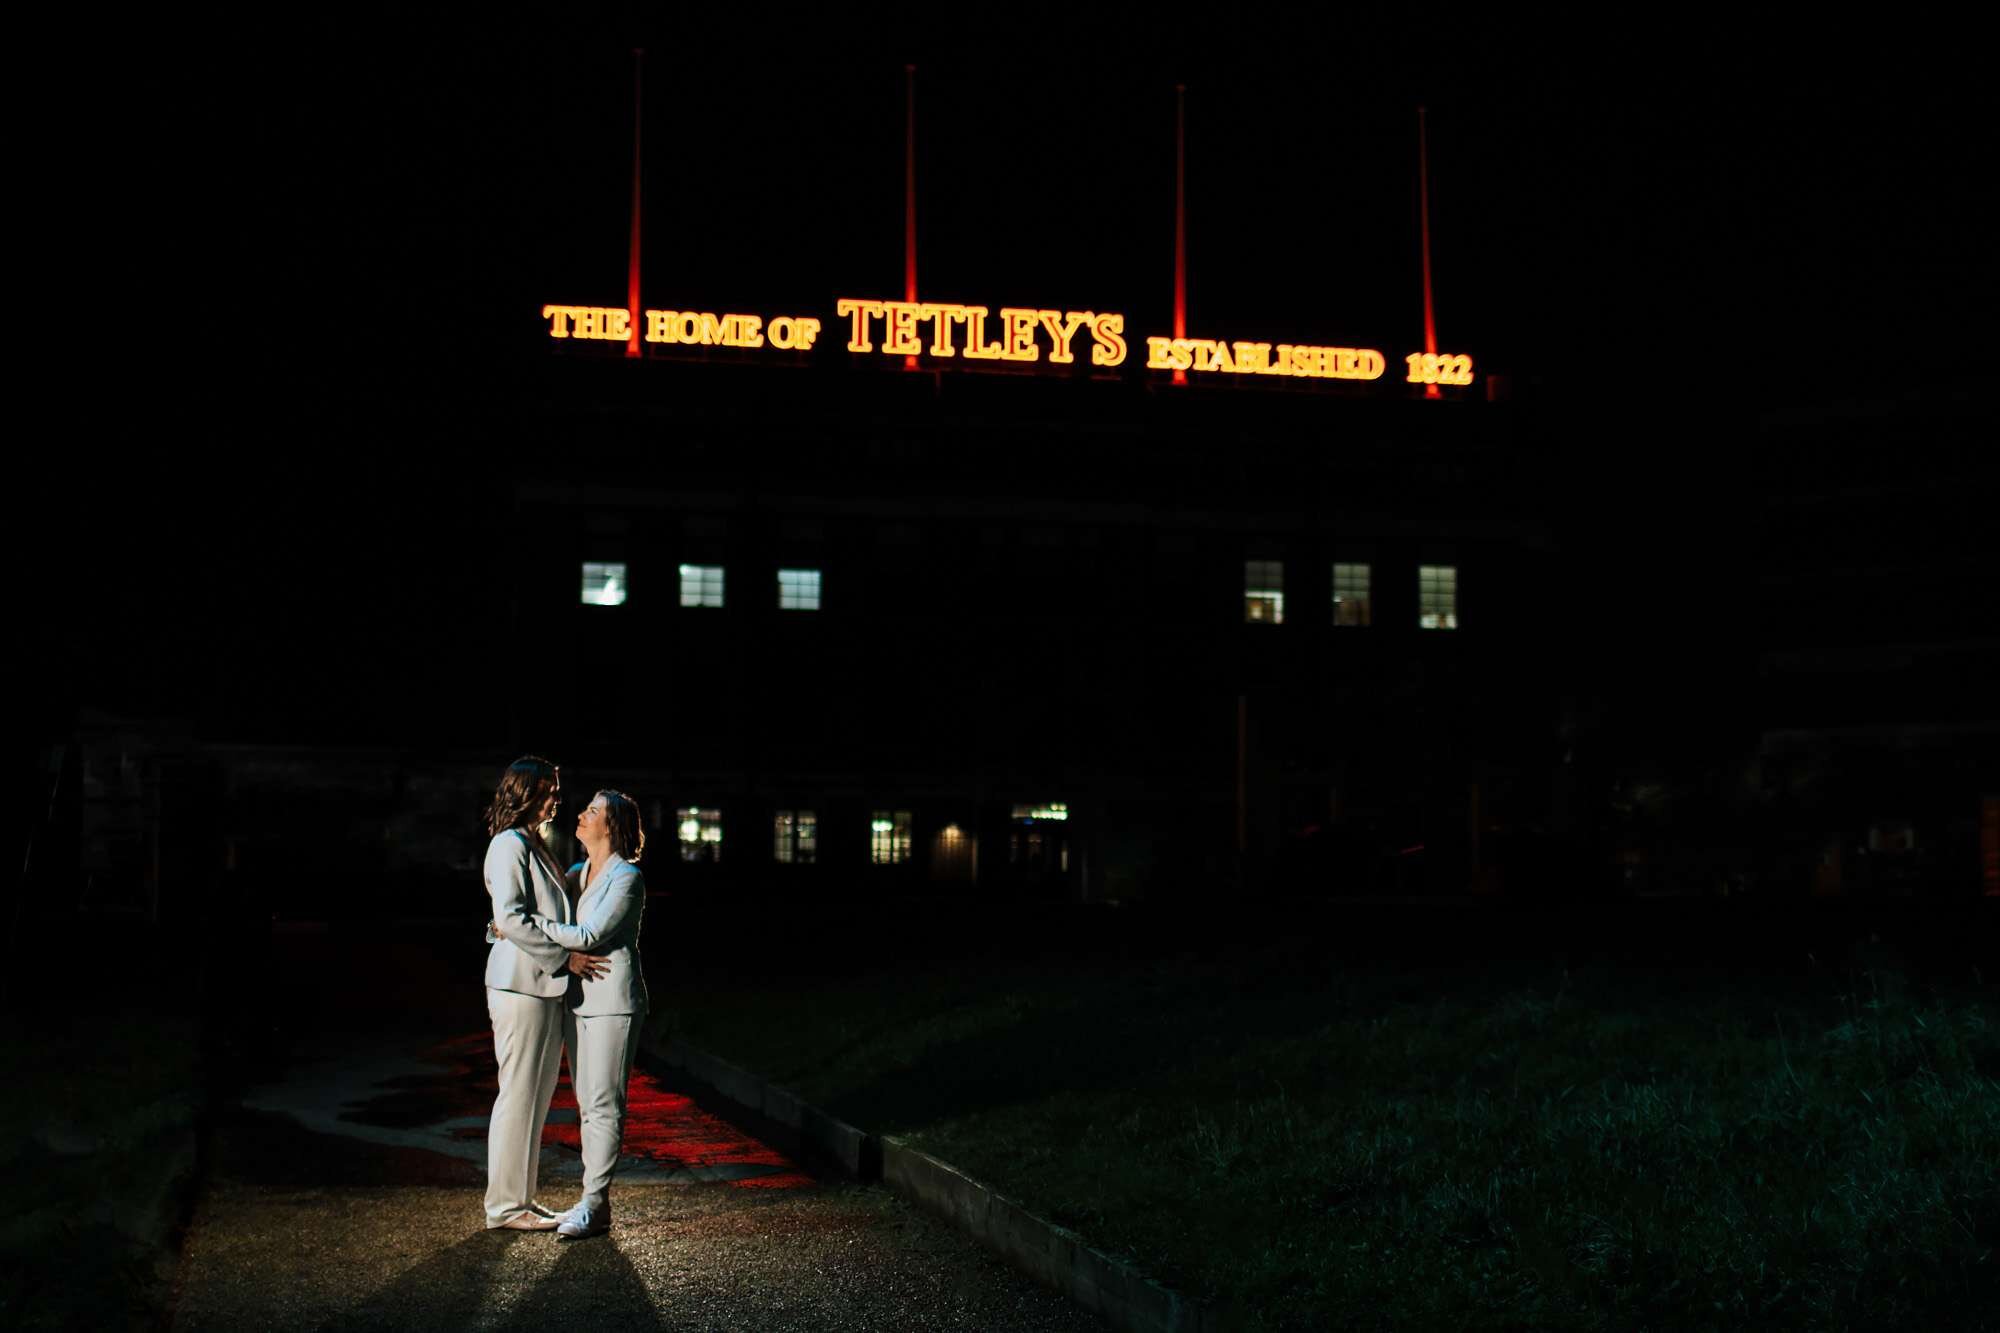 Tetley wedding at night in Leeds